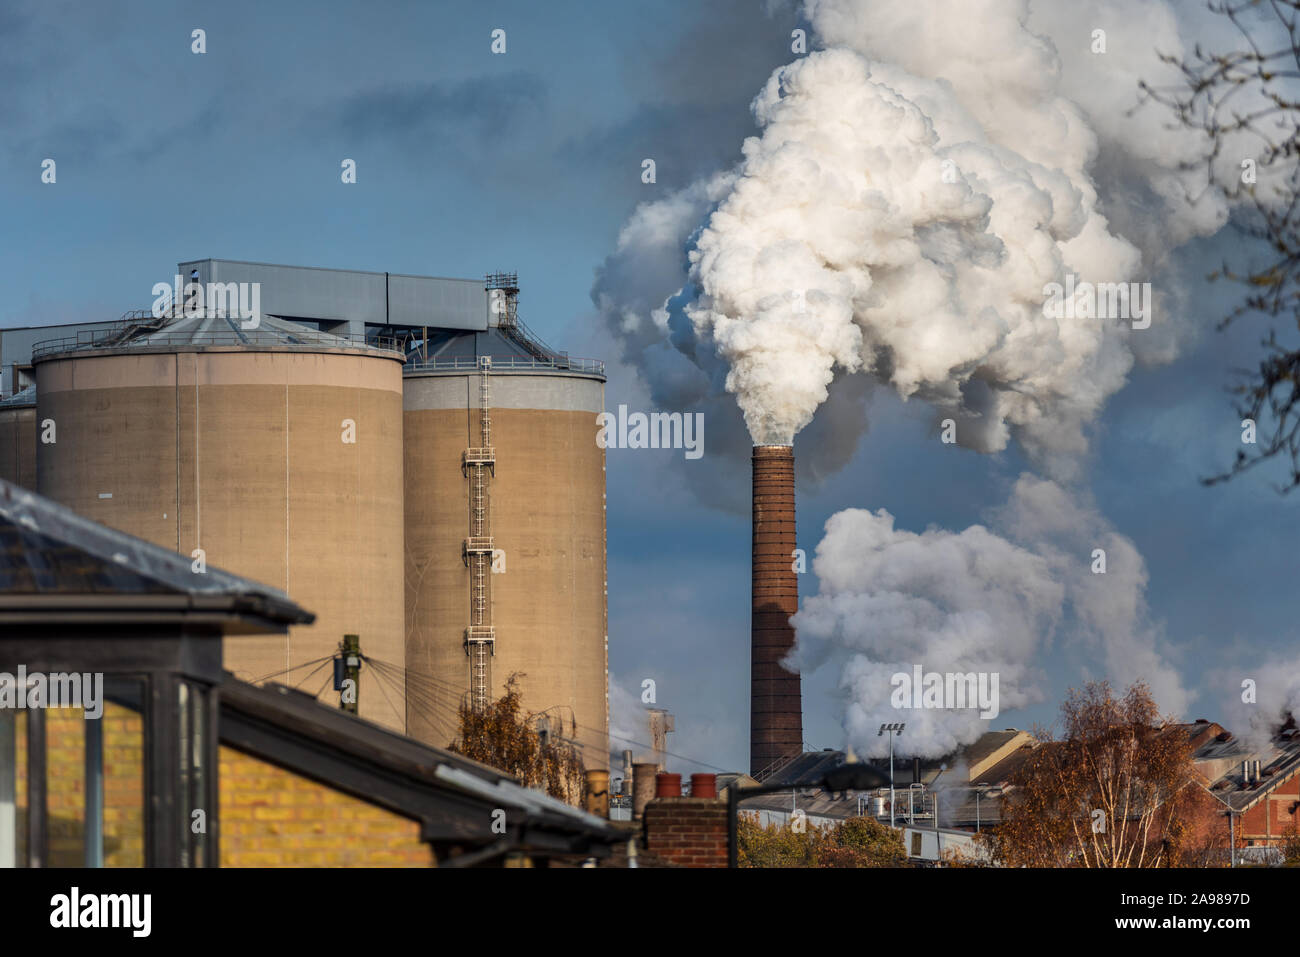 Emisiones de la fábrica del Reino Unido - chimeneas de la fábrica de remolacha azucarera - el vapor se eleva de la fábrica británica de azúcar en Bury St Edmunds Suffolk, Reino Unido Foto de stock